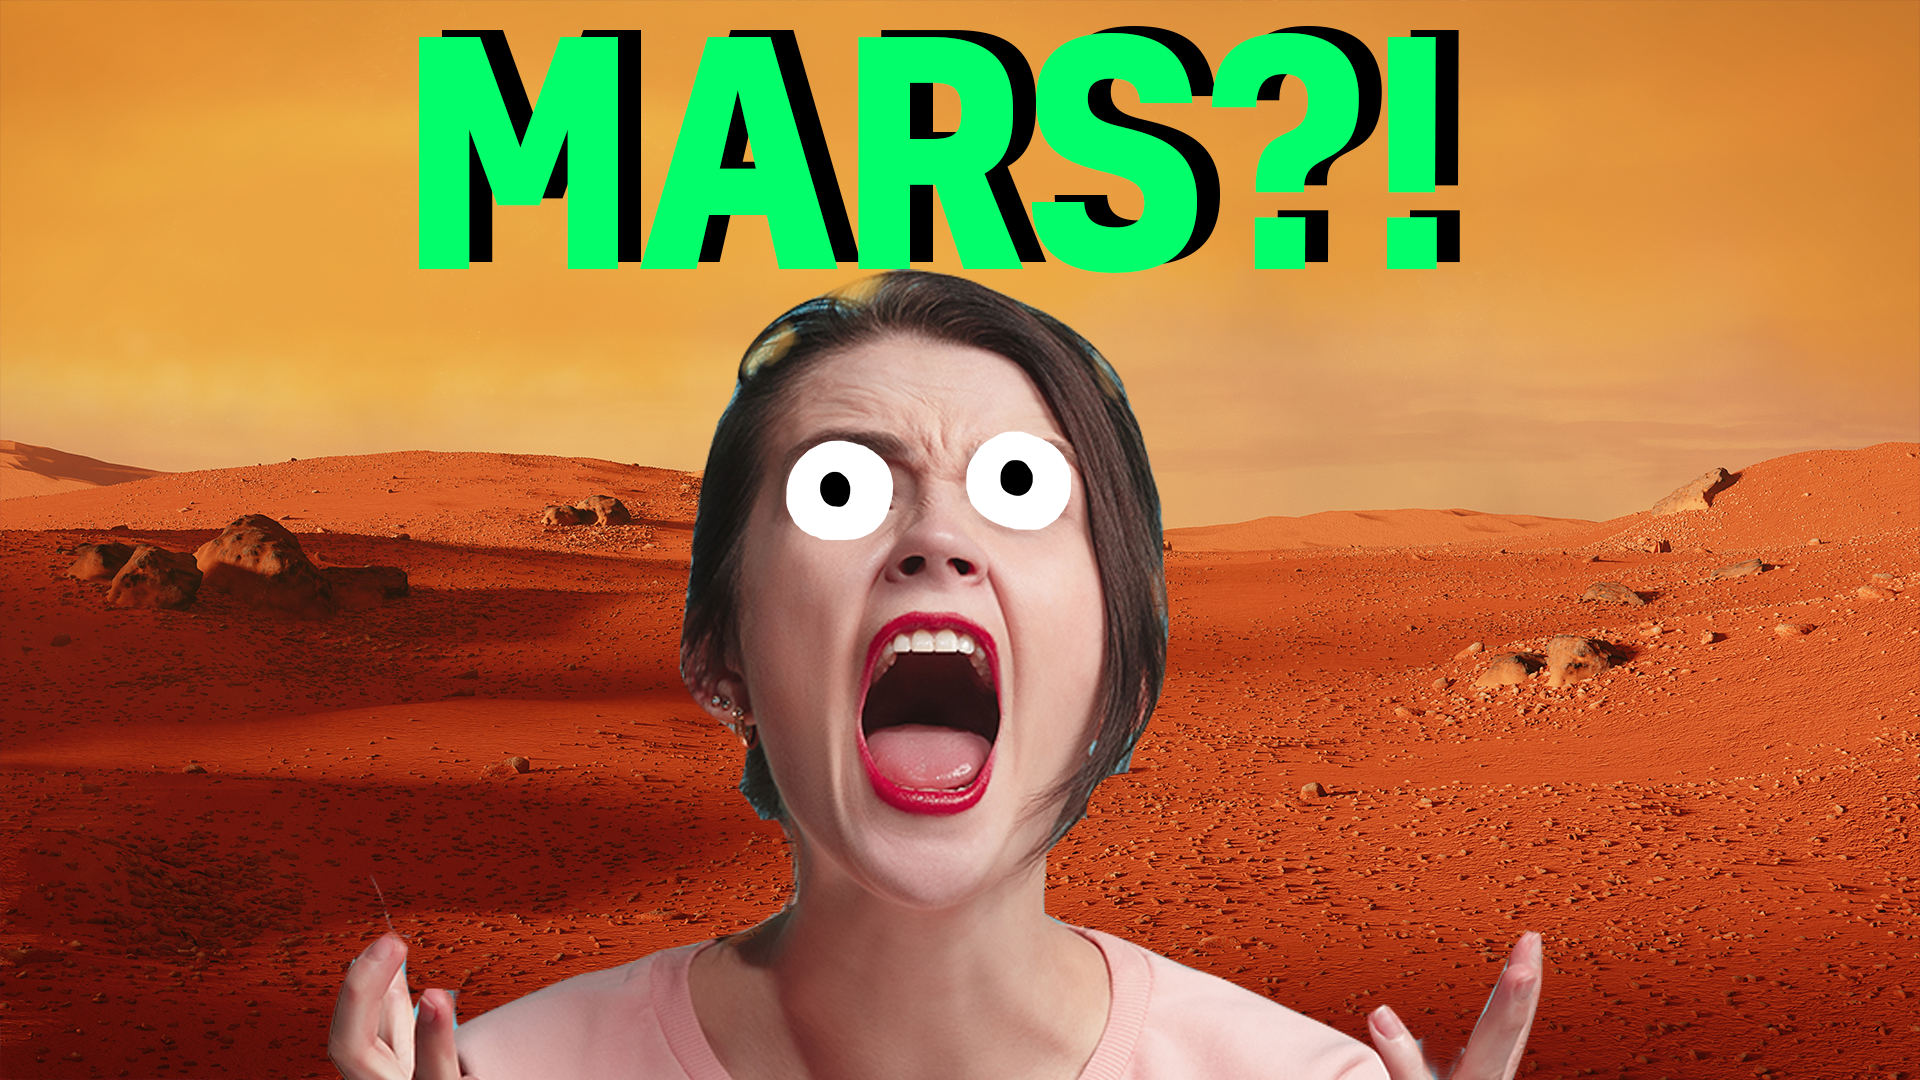 Mars result thumbnail